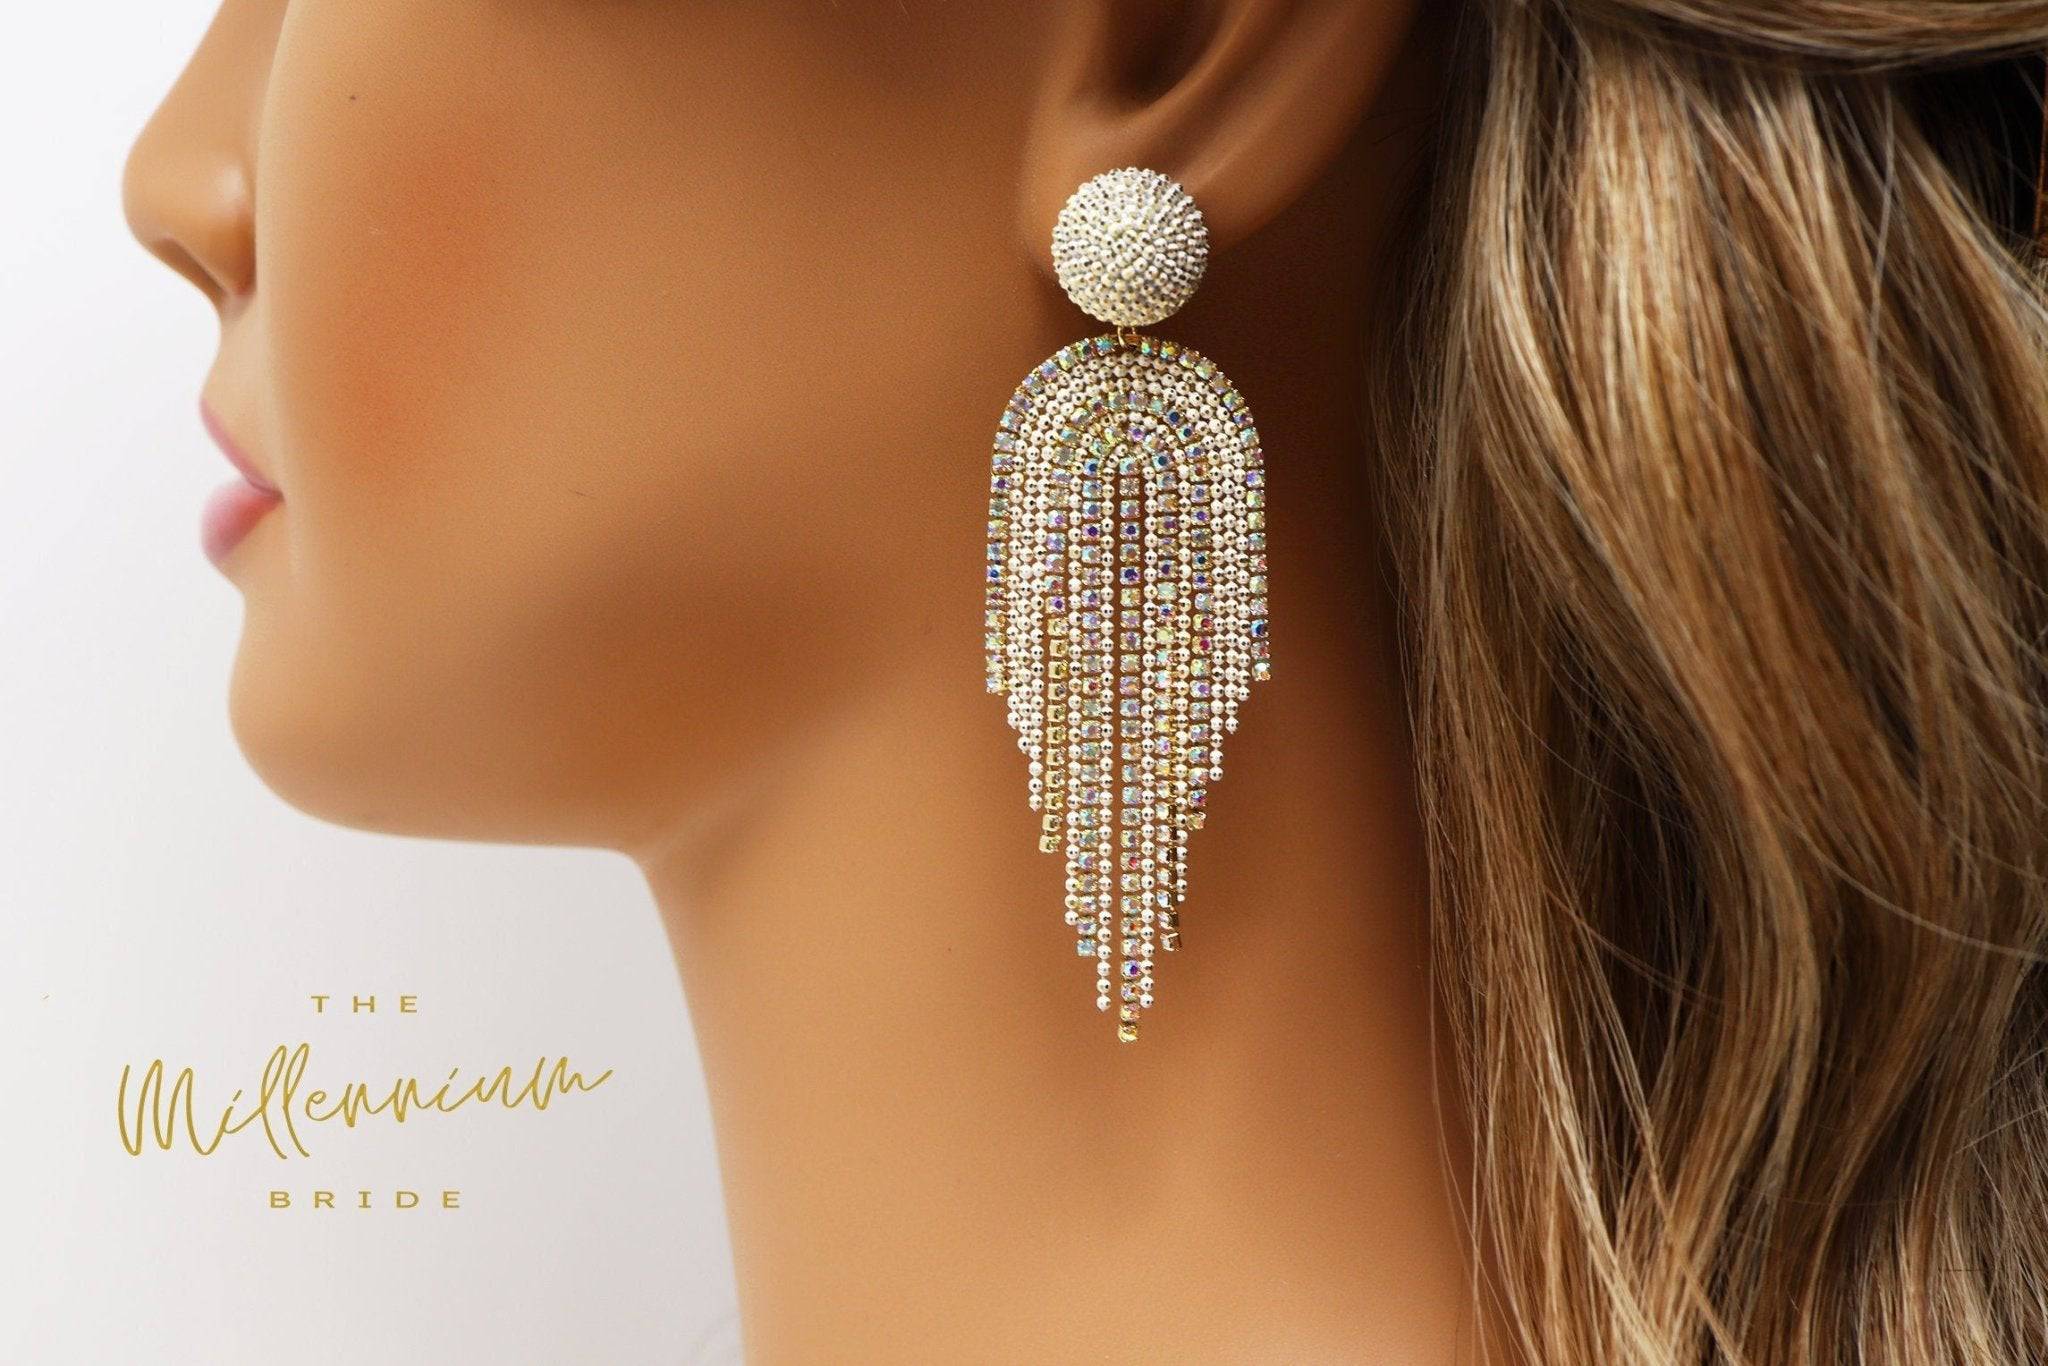 Elegant Rose Gold Plated Diamond Chandelier Earrings, Indian Jewelry,  Statement Earrings, Statement Jewelry,diamond Earrings,indian Earrings -  Etsy | Etsy earrings, Indian earrings, Diamond earrings